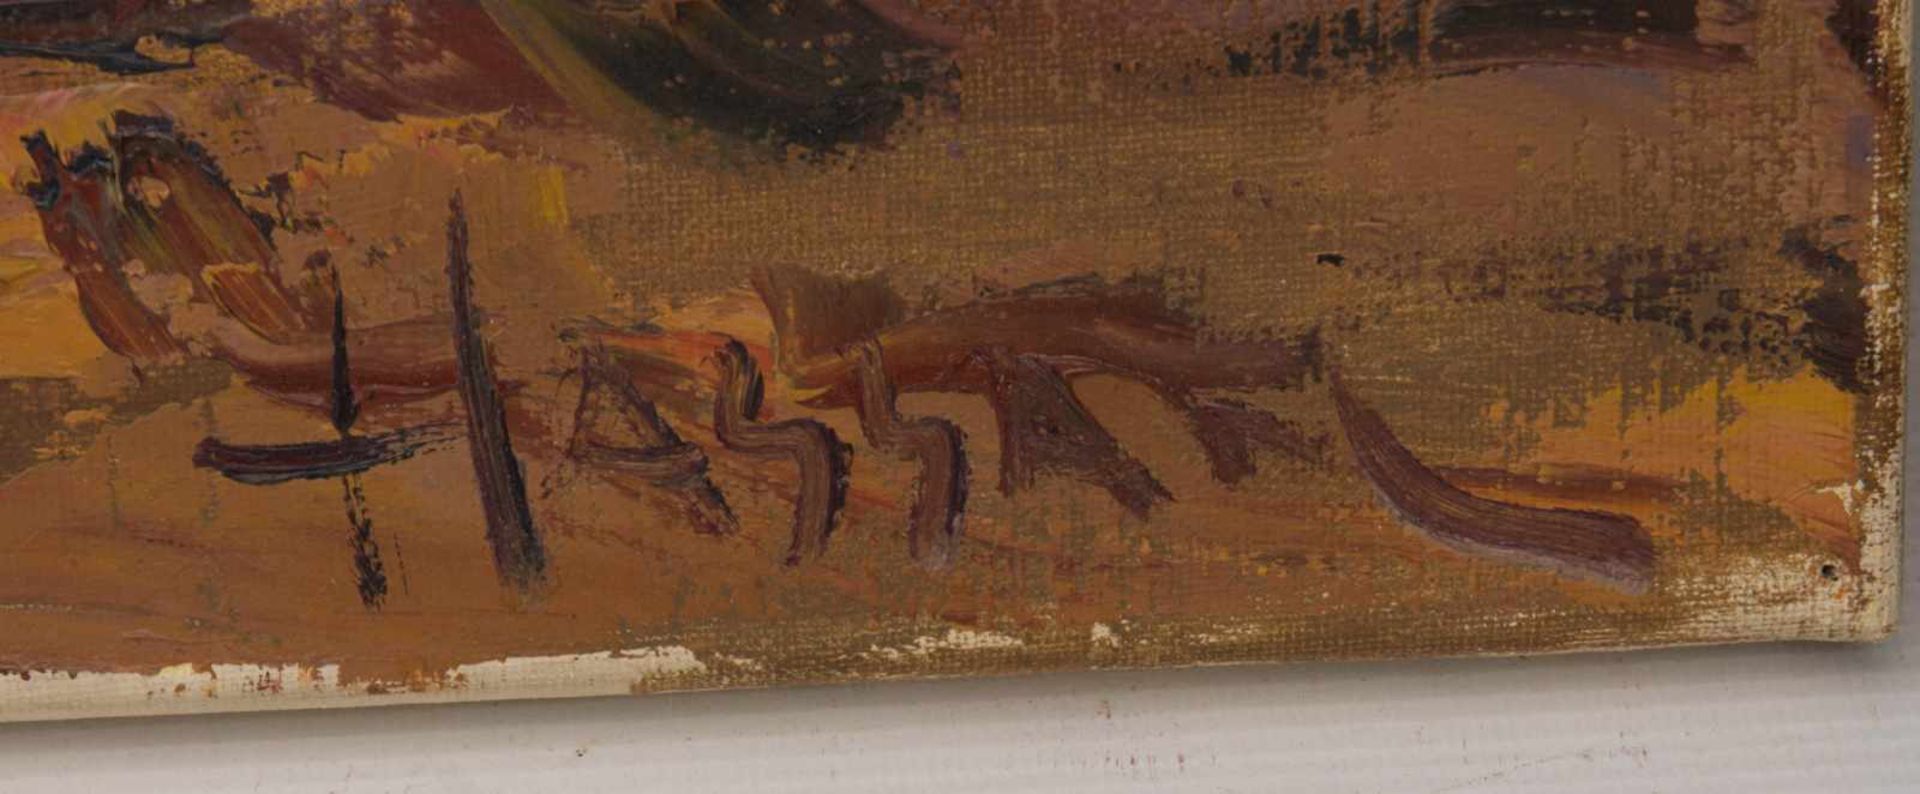 HASSAN, LEBEN IN DER OASE, Öl auf Leinwand, ungerahmt, signiert.Rechts unten signiert "Hassan".60 - Image 2 of 5